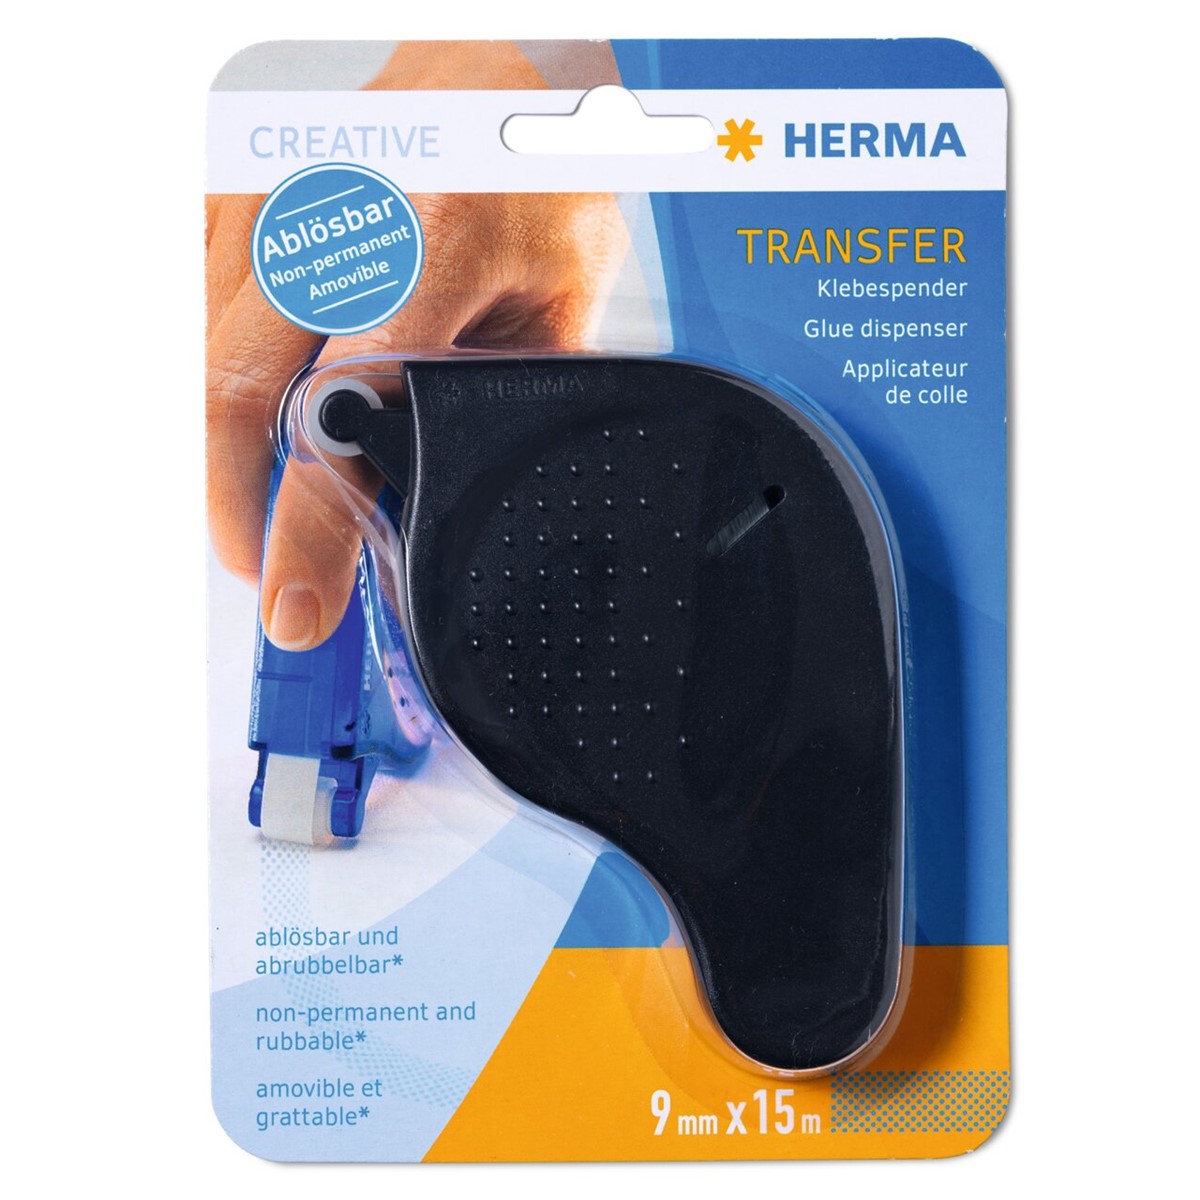 HERMA Tape in dispenser "Transfer"- removable